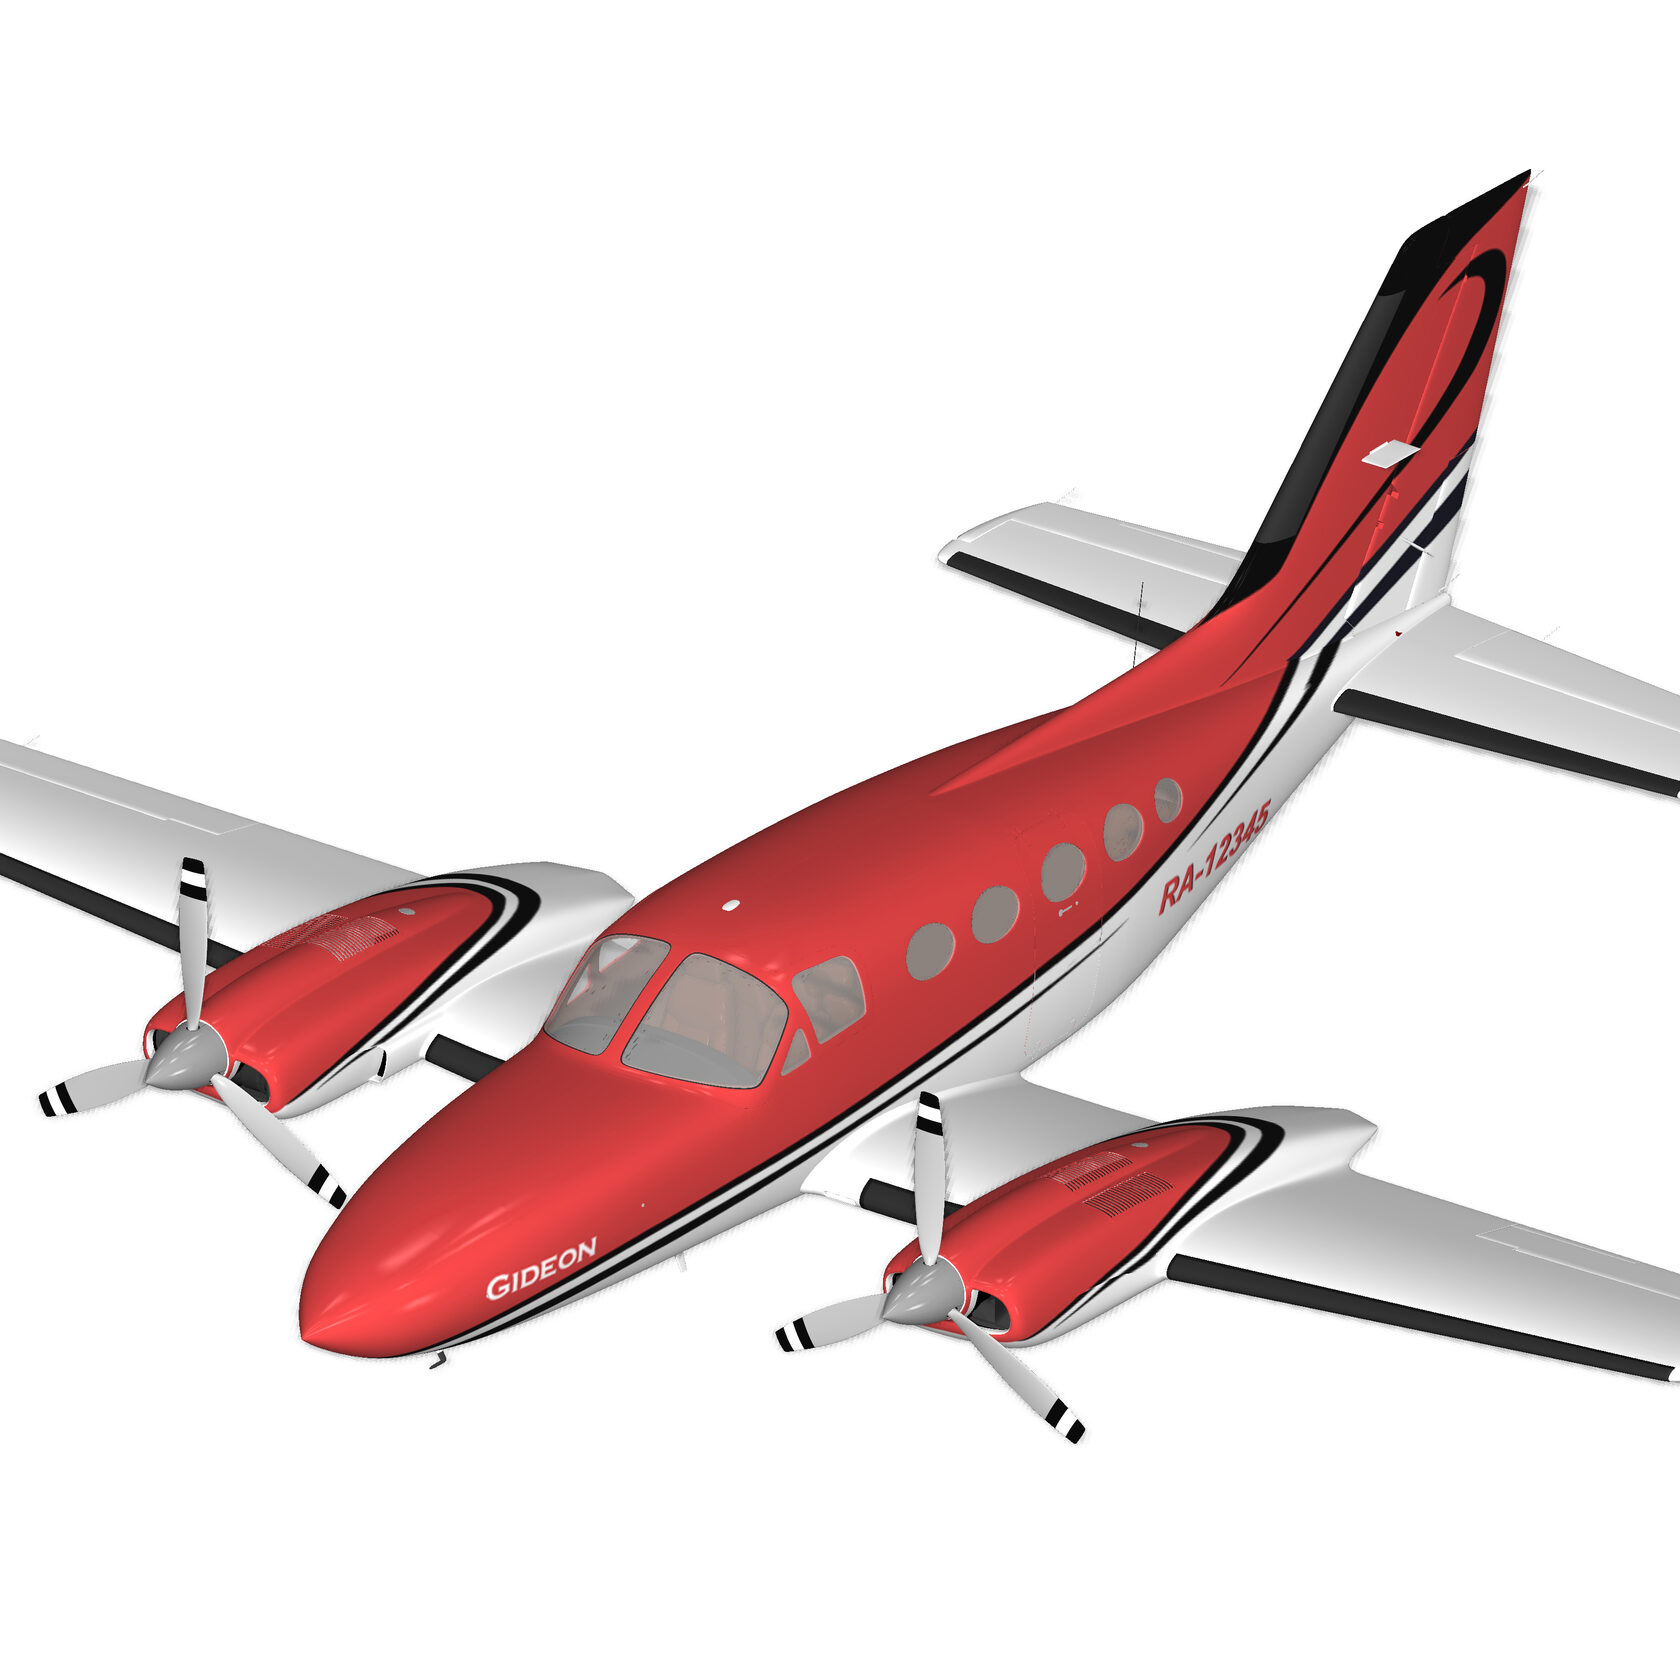 Разработка ливреи бизнес авиации